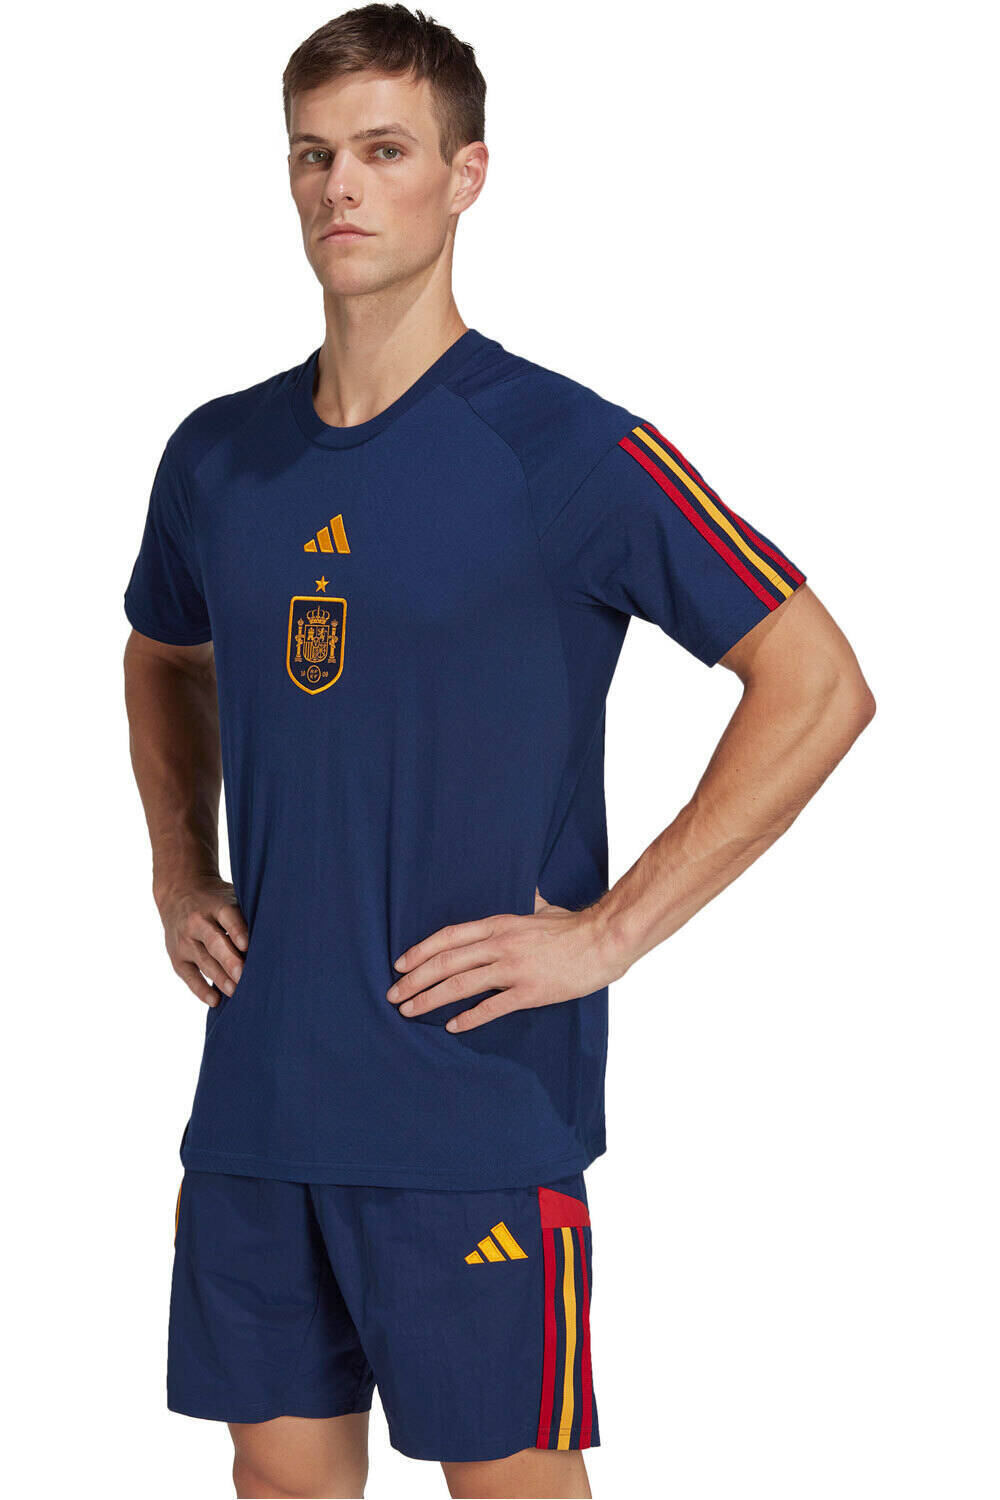 adidas camiseta de fútbol oficiales Spain Travel vista frontal